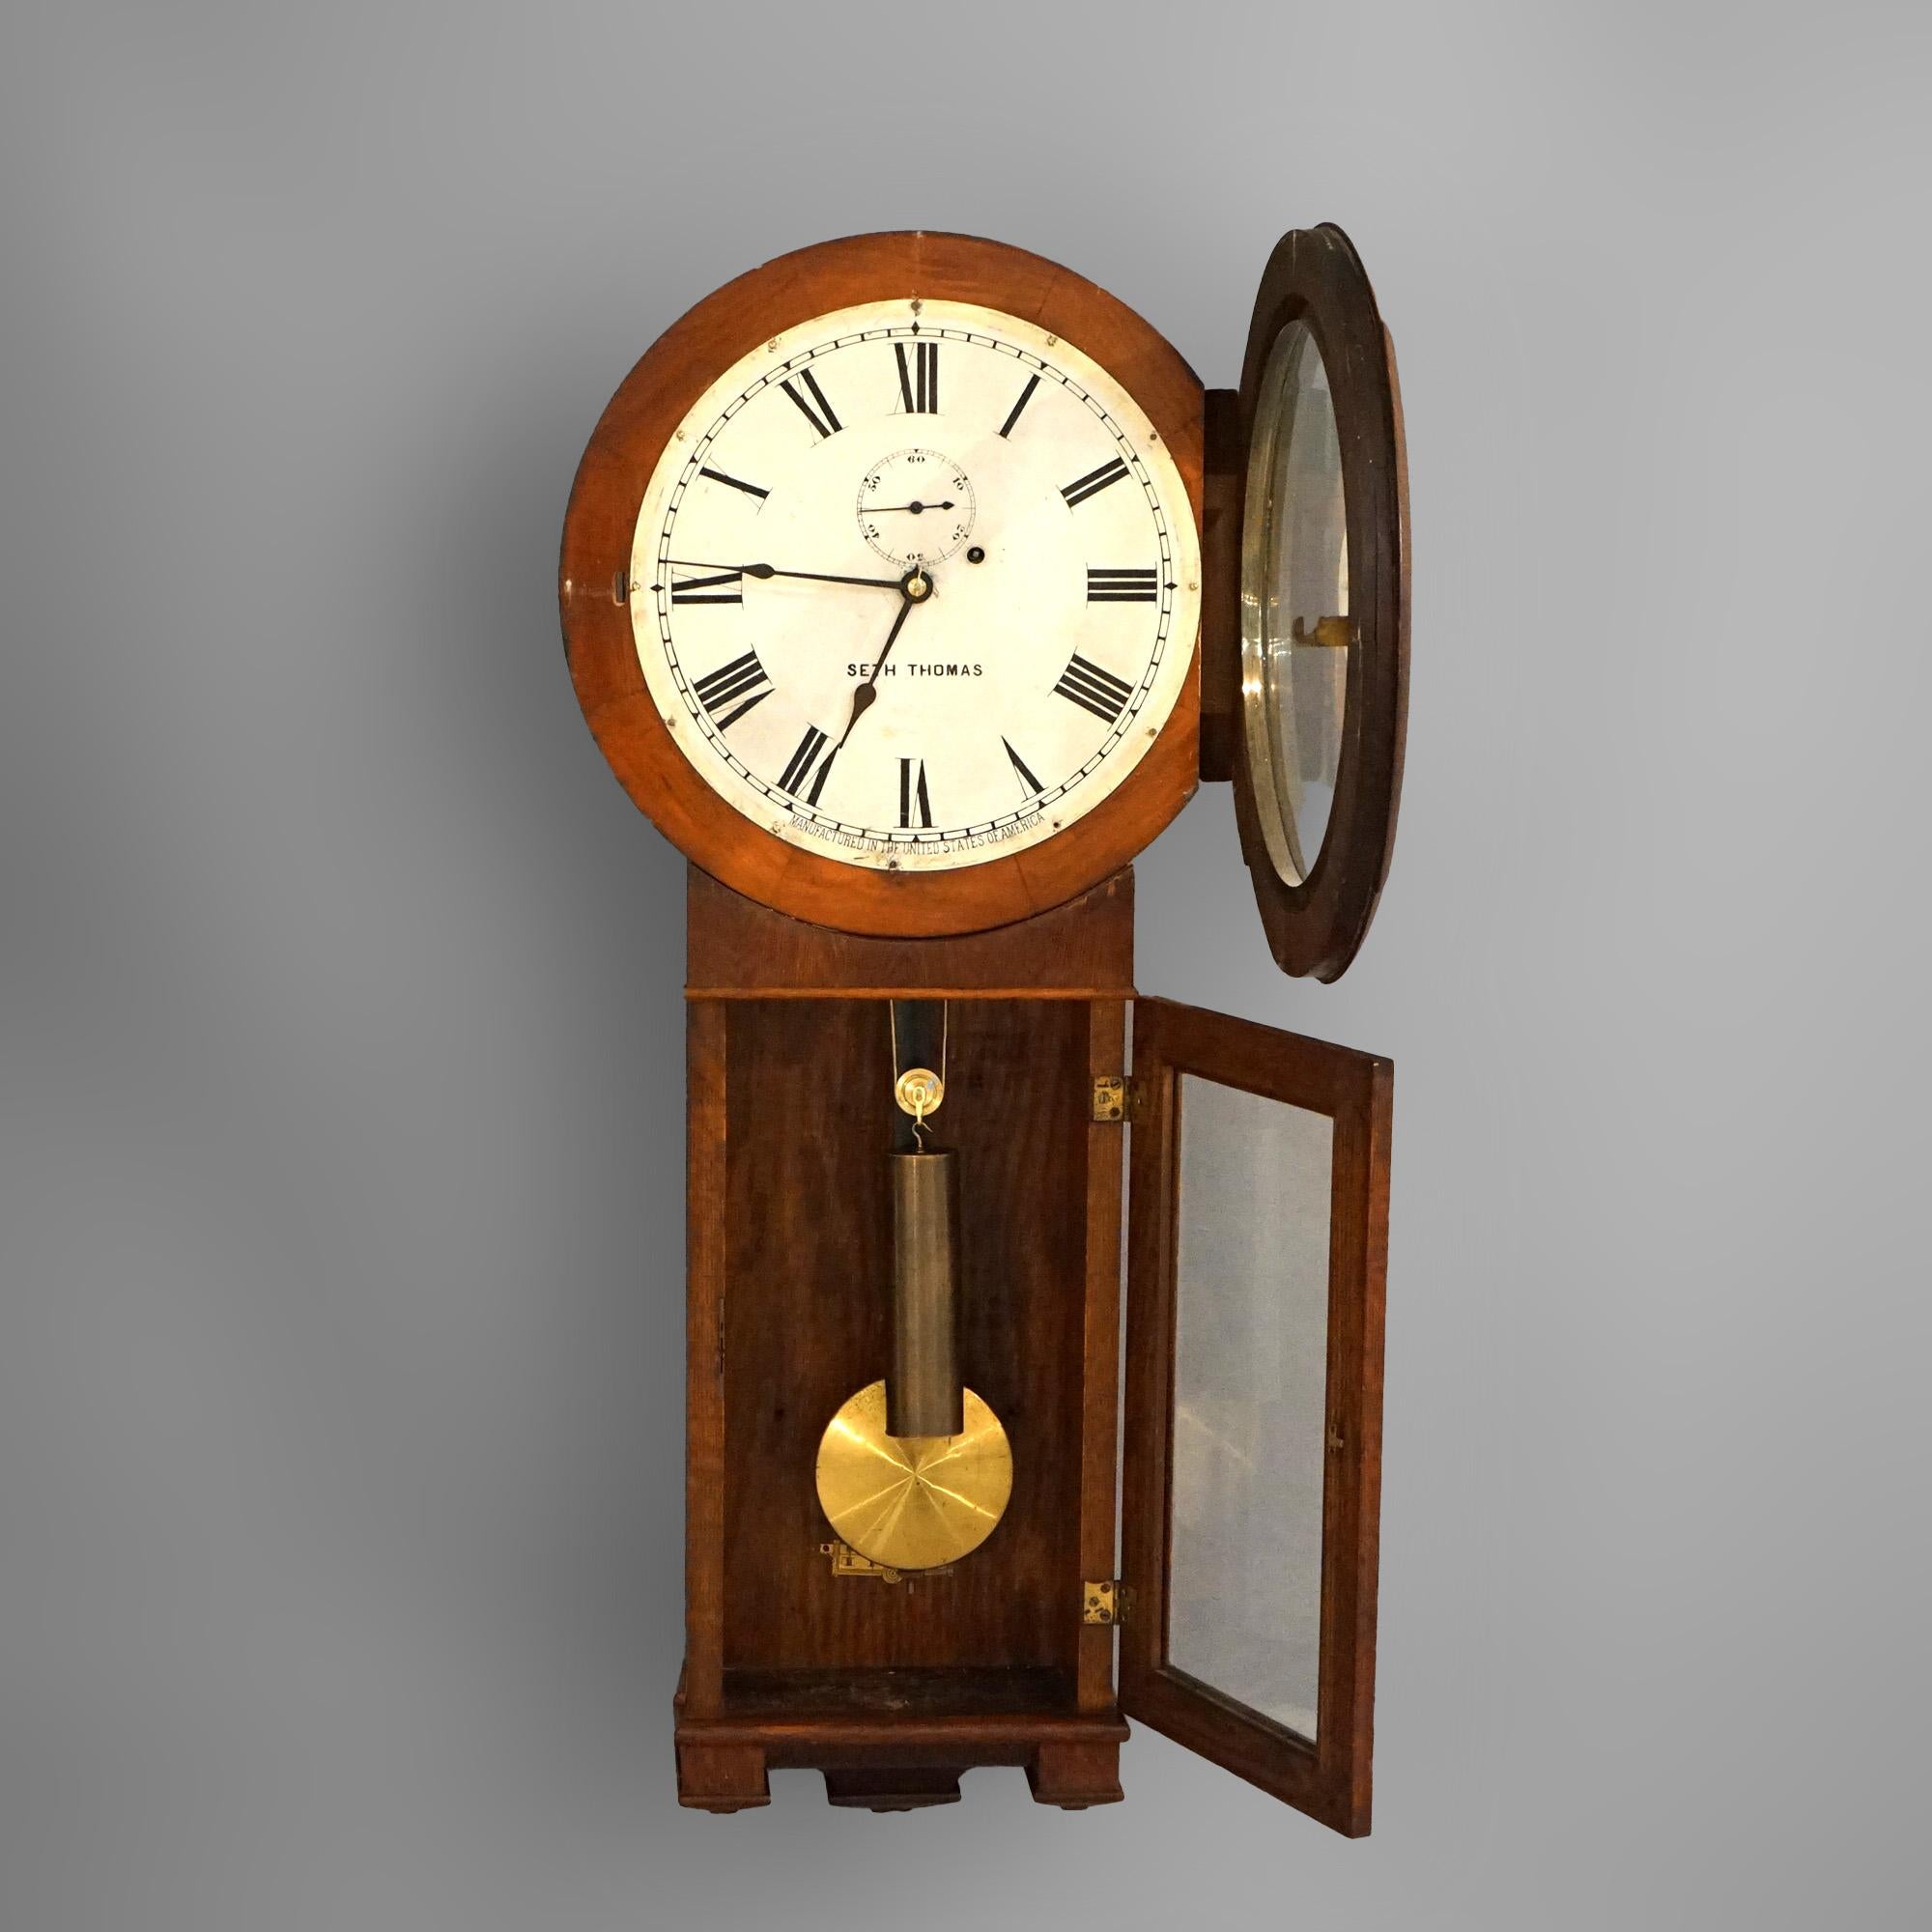 Antique Seth Thomas Oak Regulator Wall Clock Circa 1900

Measures- 36''H x 14.5''W x 5.5''D